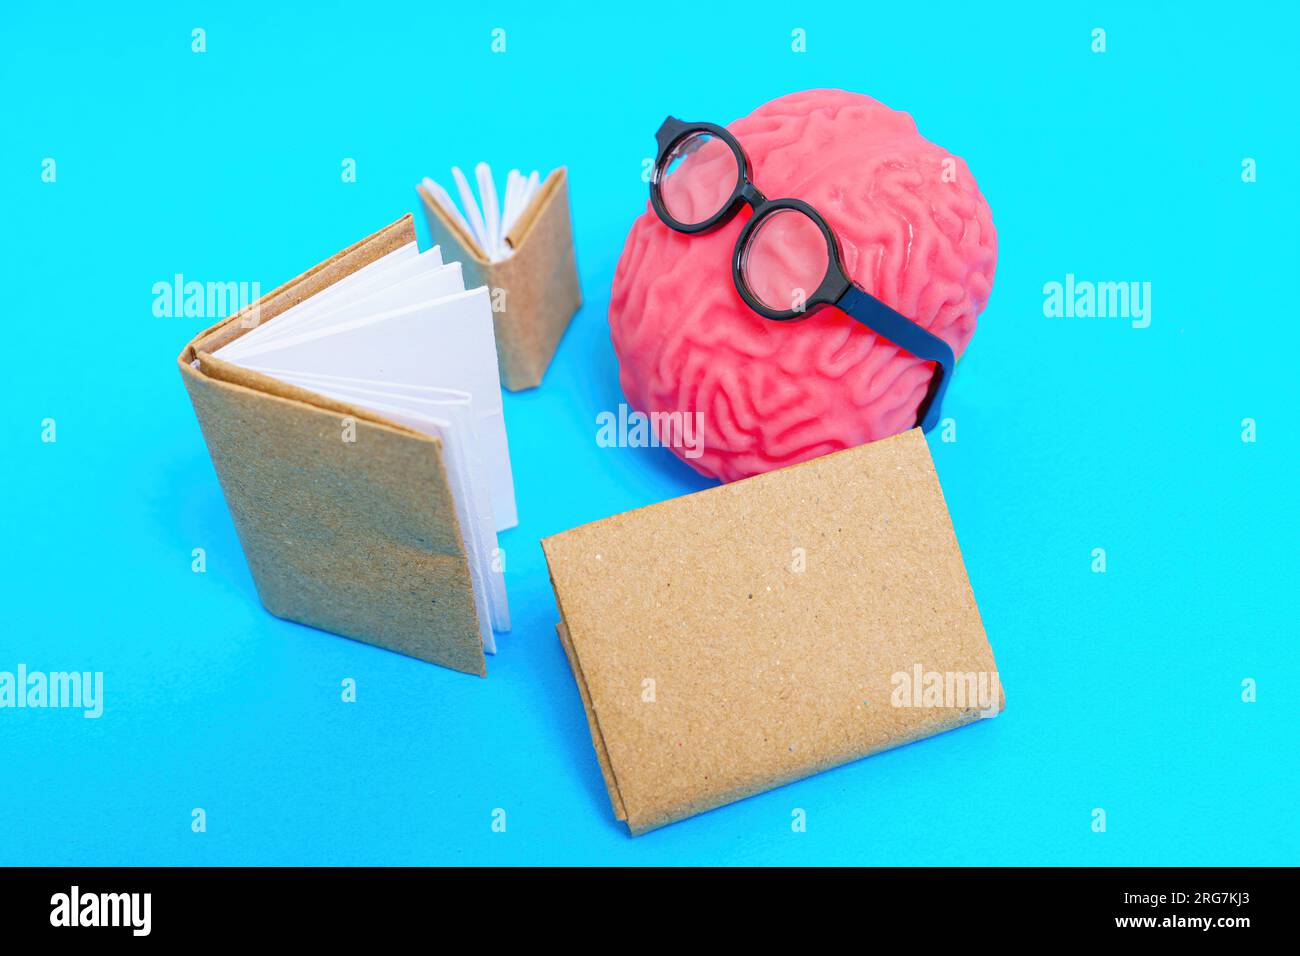 Modello di cervello umano adornato con occhiali nerd che leggono libri isolati su sfondo blu. Foto Stock